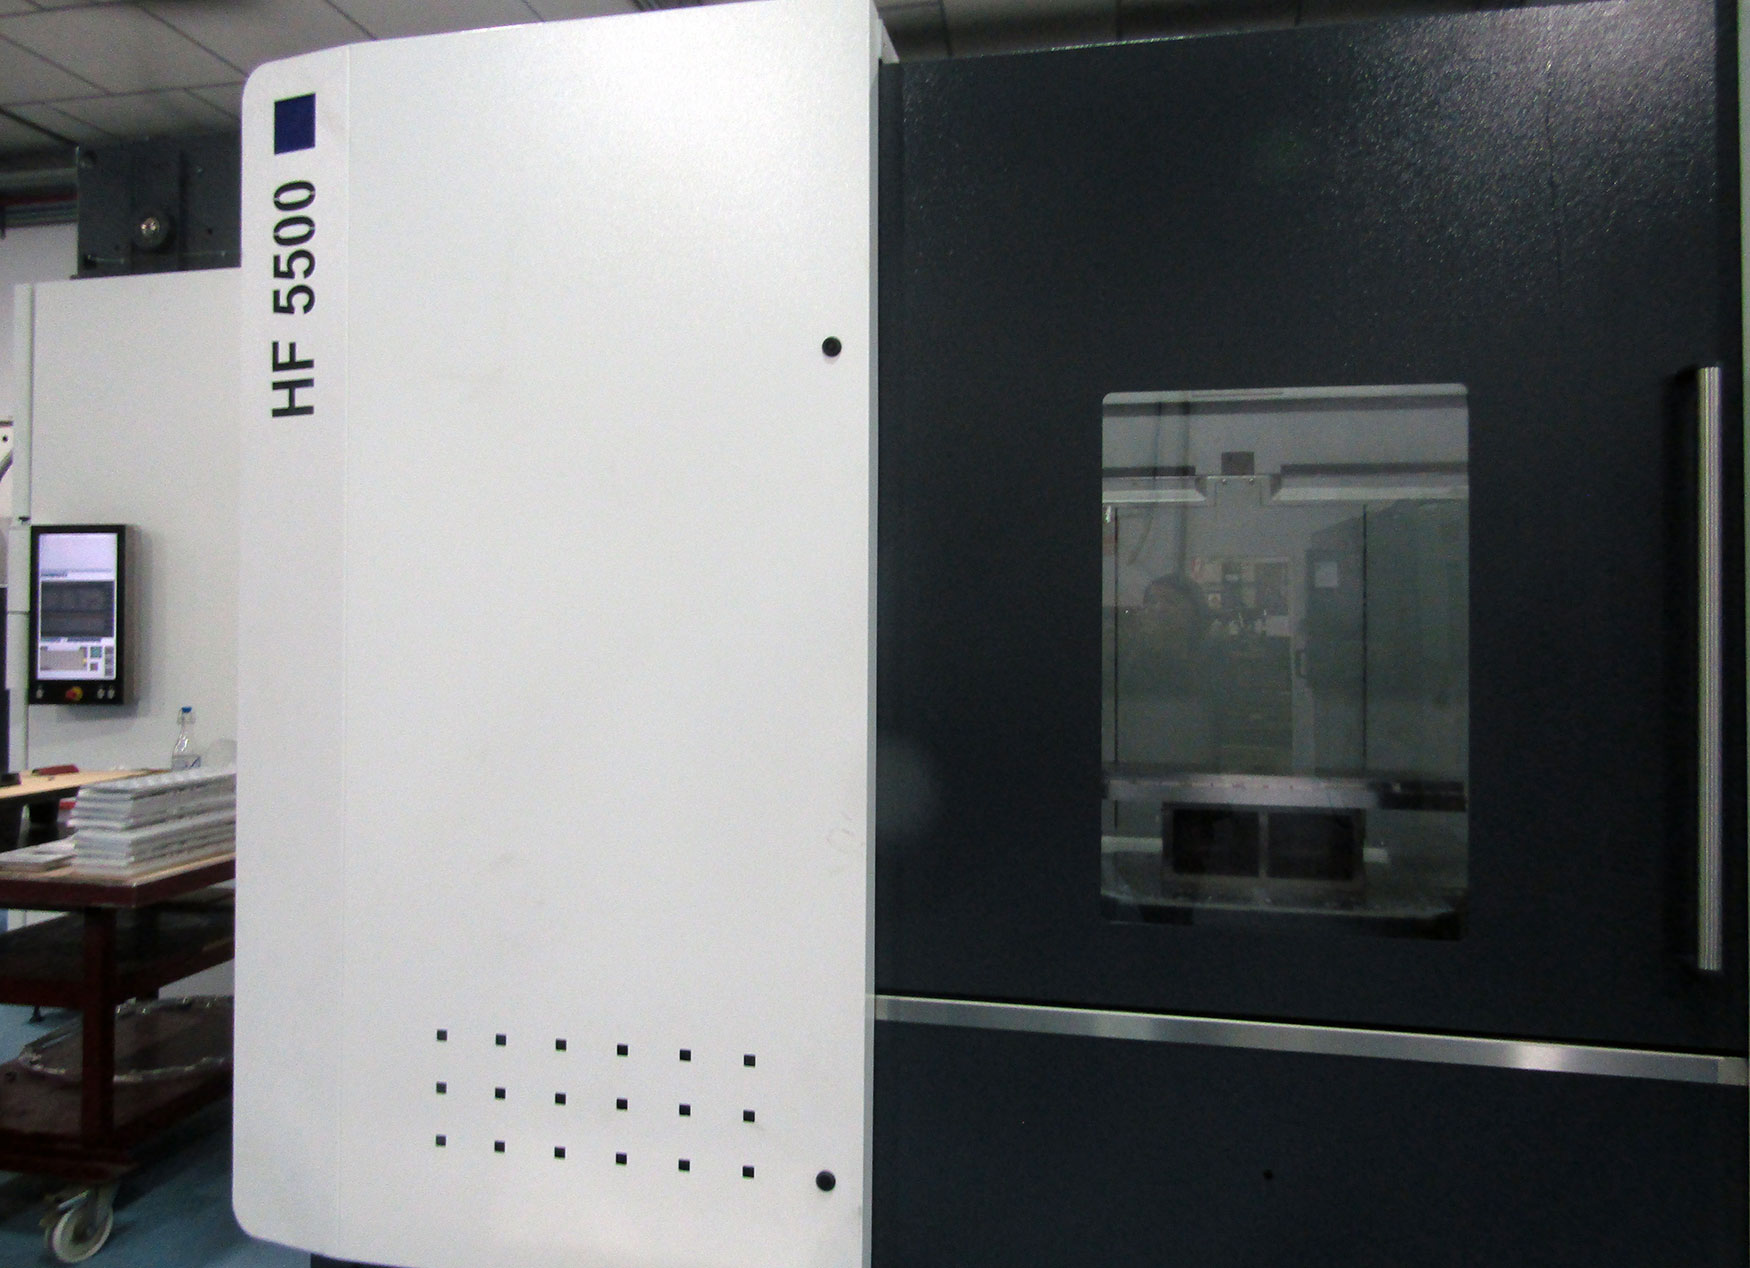 El modelo HF 5500 presenta un rea de trabajo de 900 x 950 x 900 mm